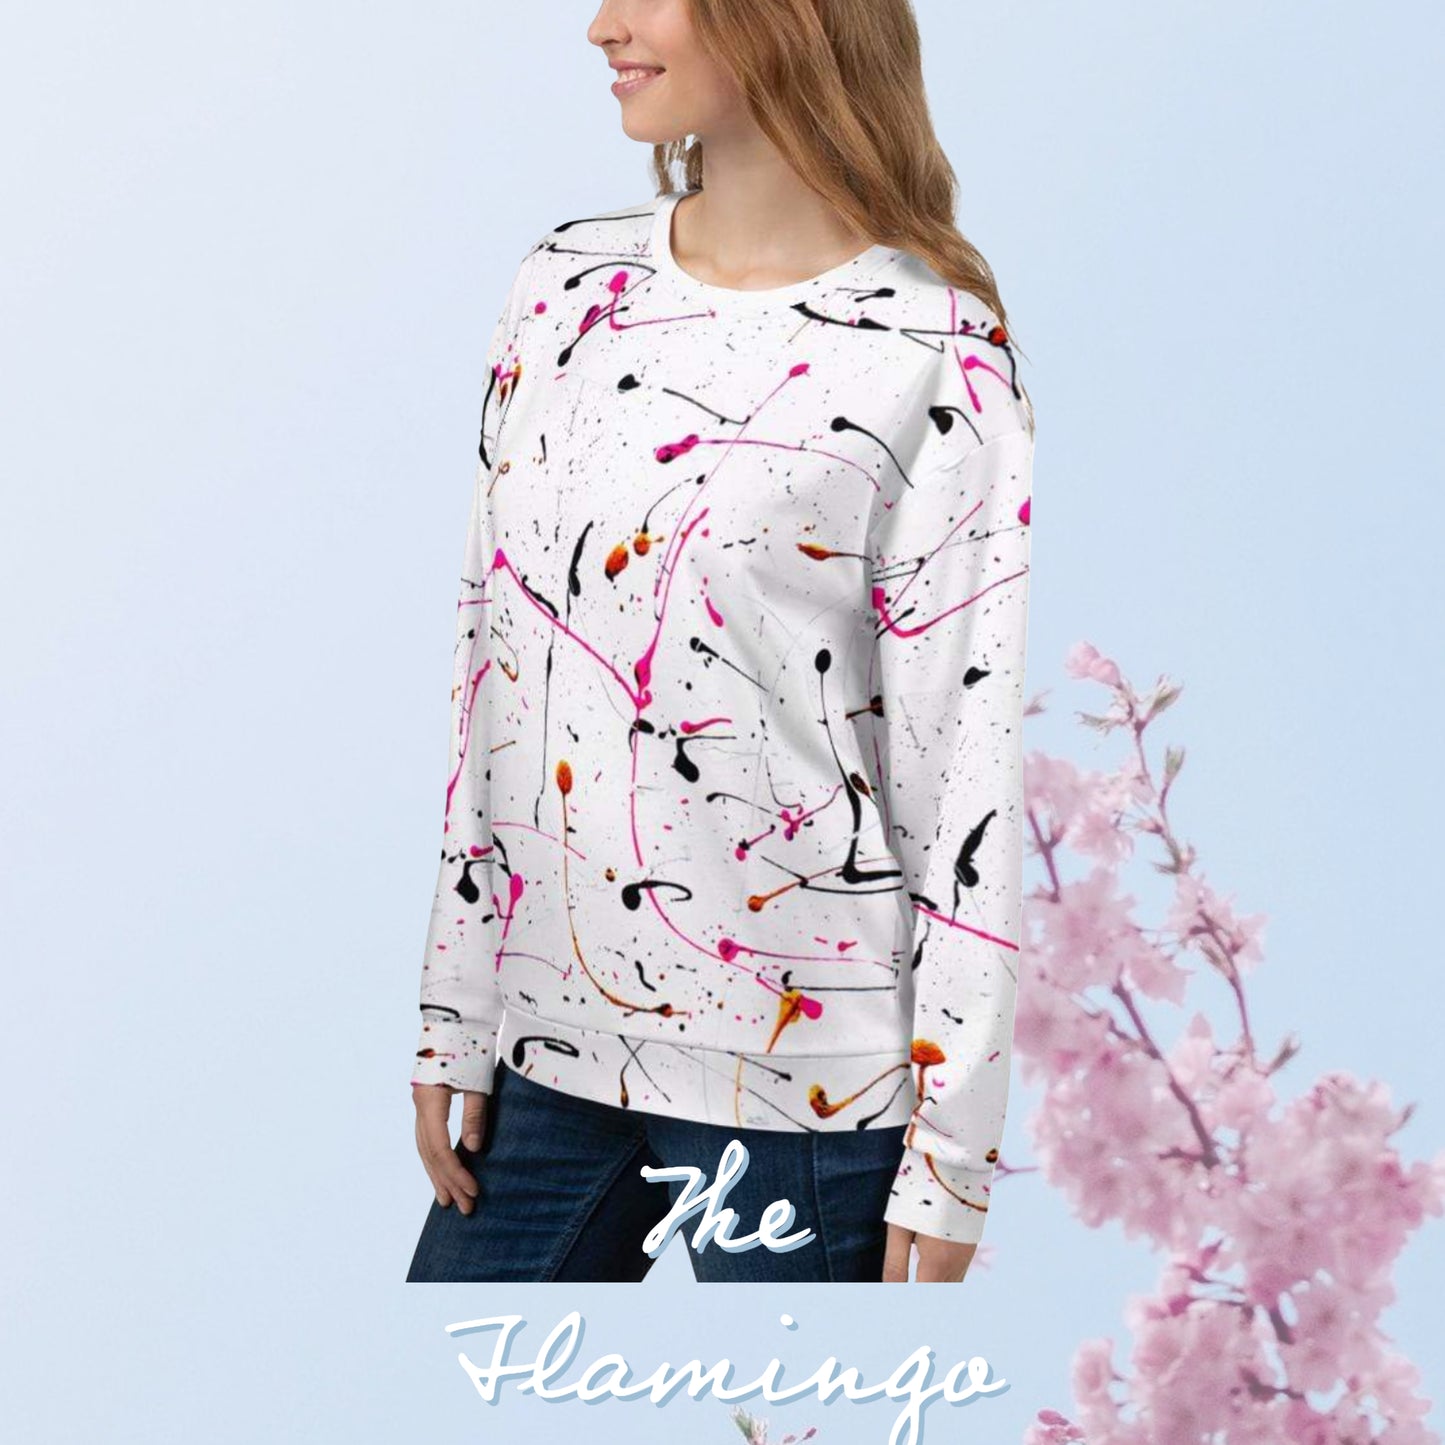 Flamingo unisex sweatshirt